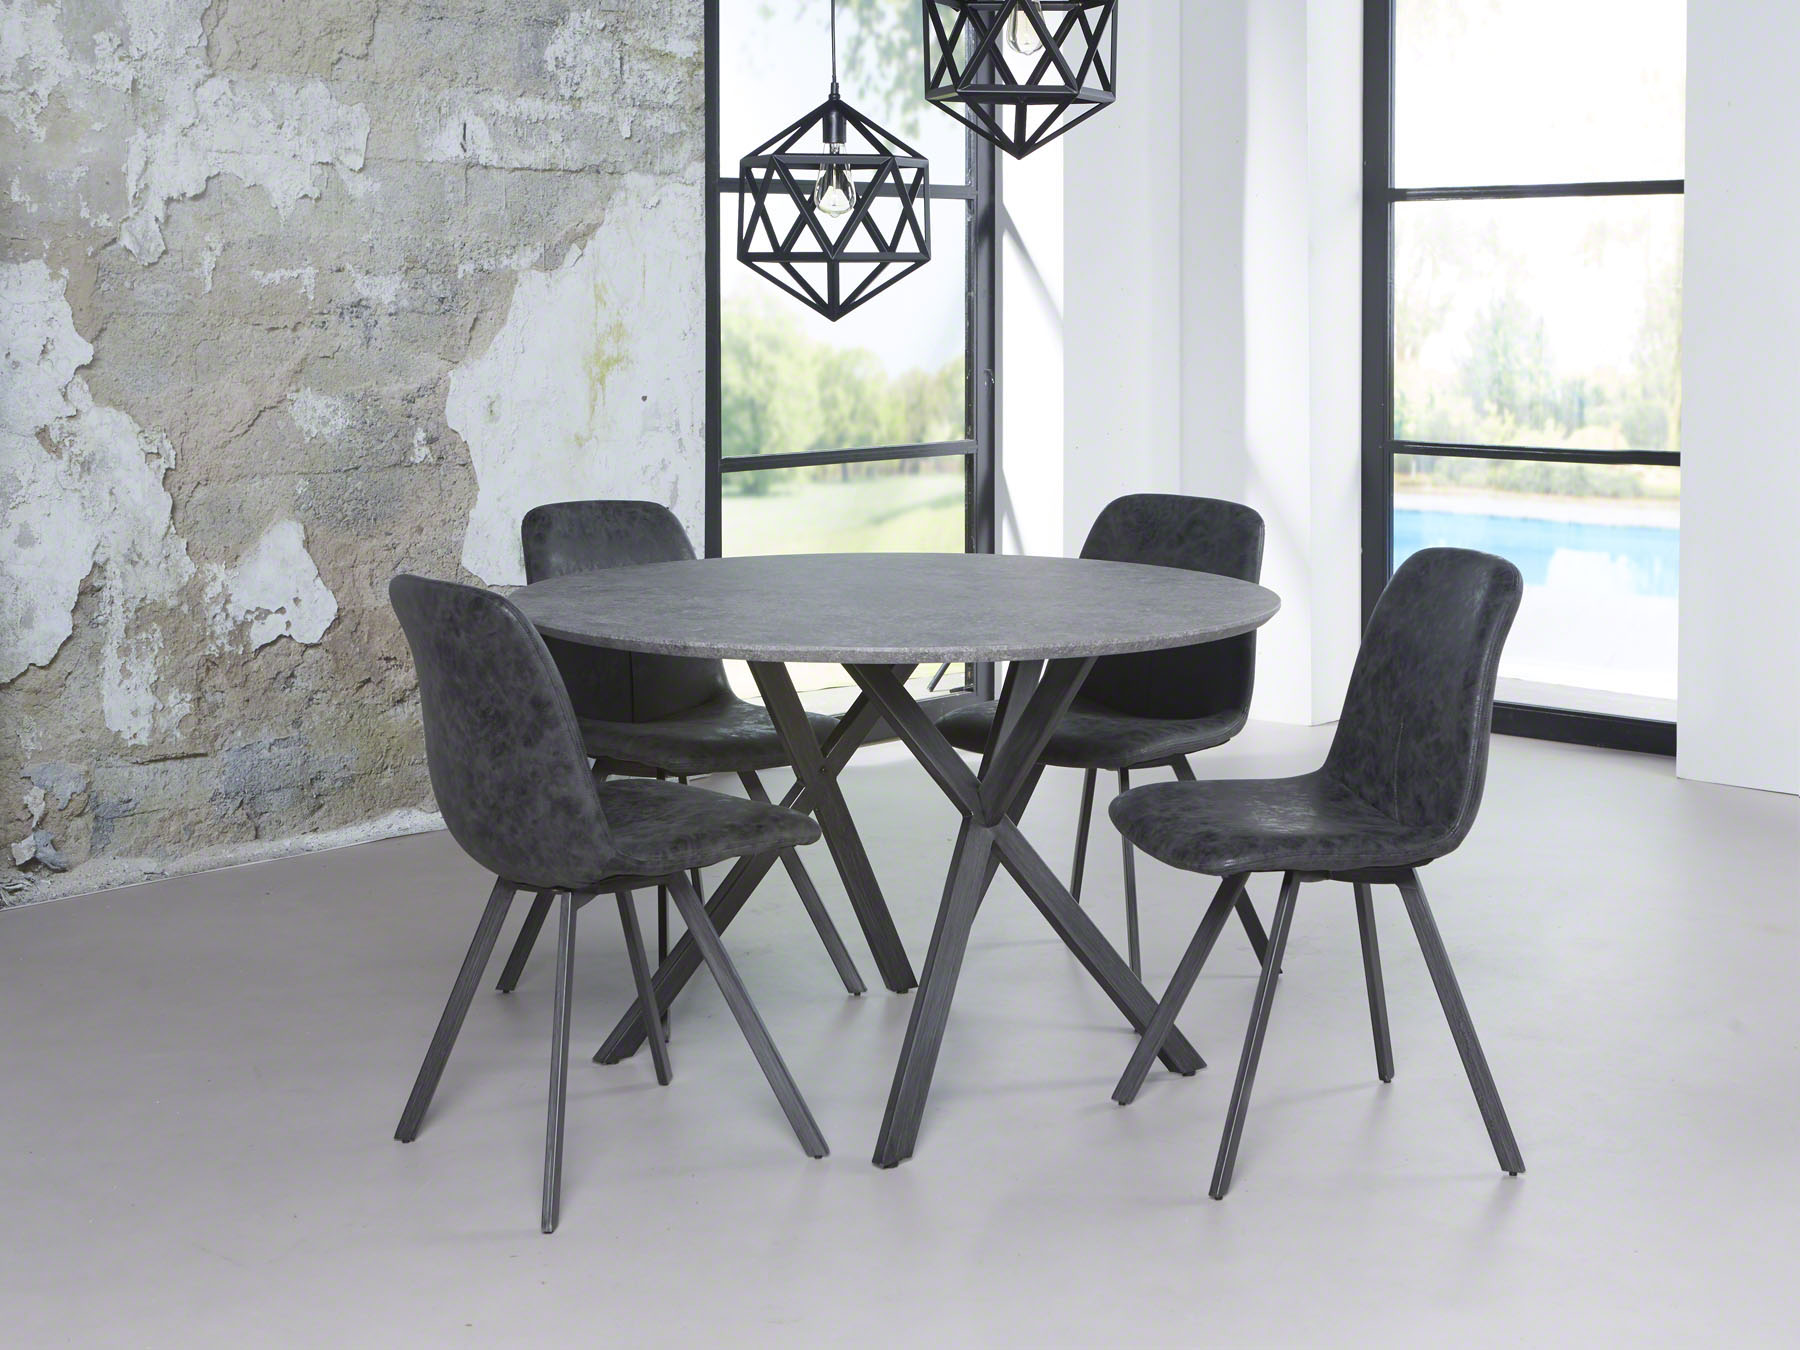 naald Koor uitvinden moderne ronde tafel kopen? | meubeldeals.nl